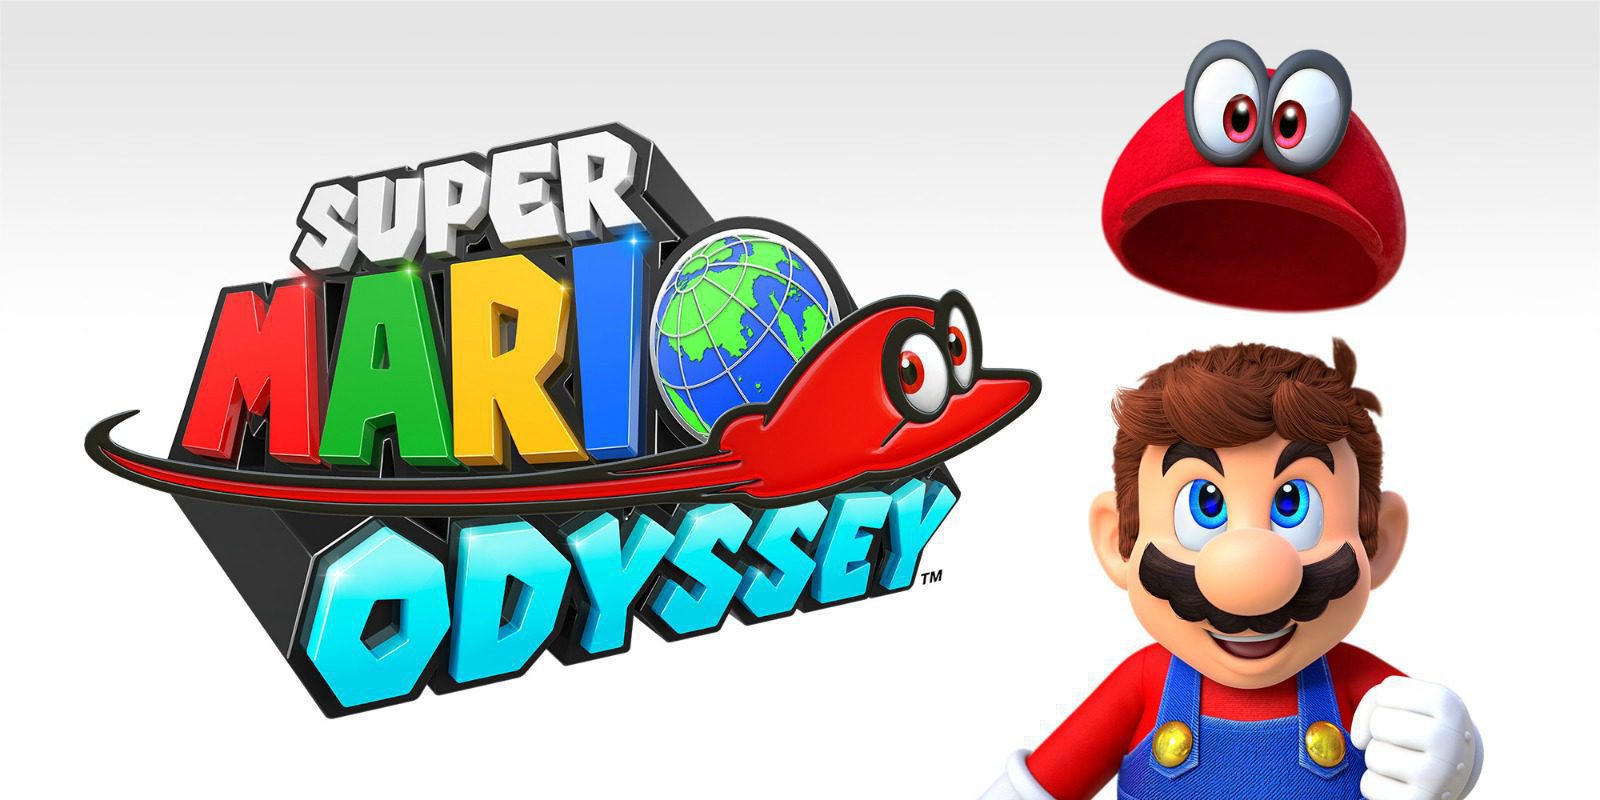 'Super Mario Odyssey', mejor juego del E3 2017 en los Game Critics Awards